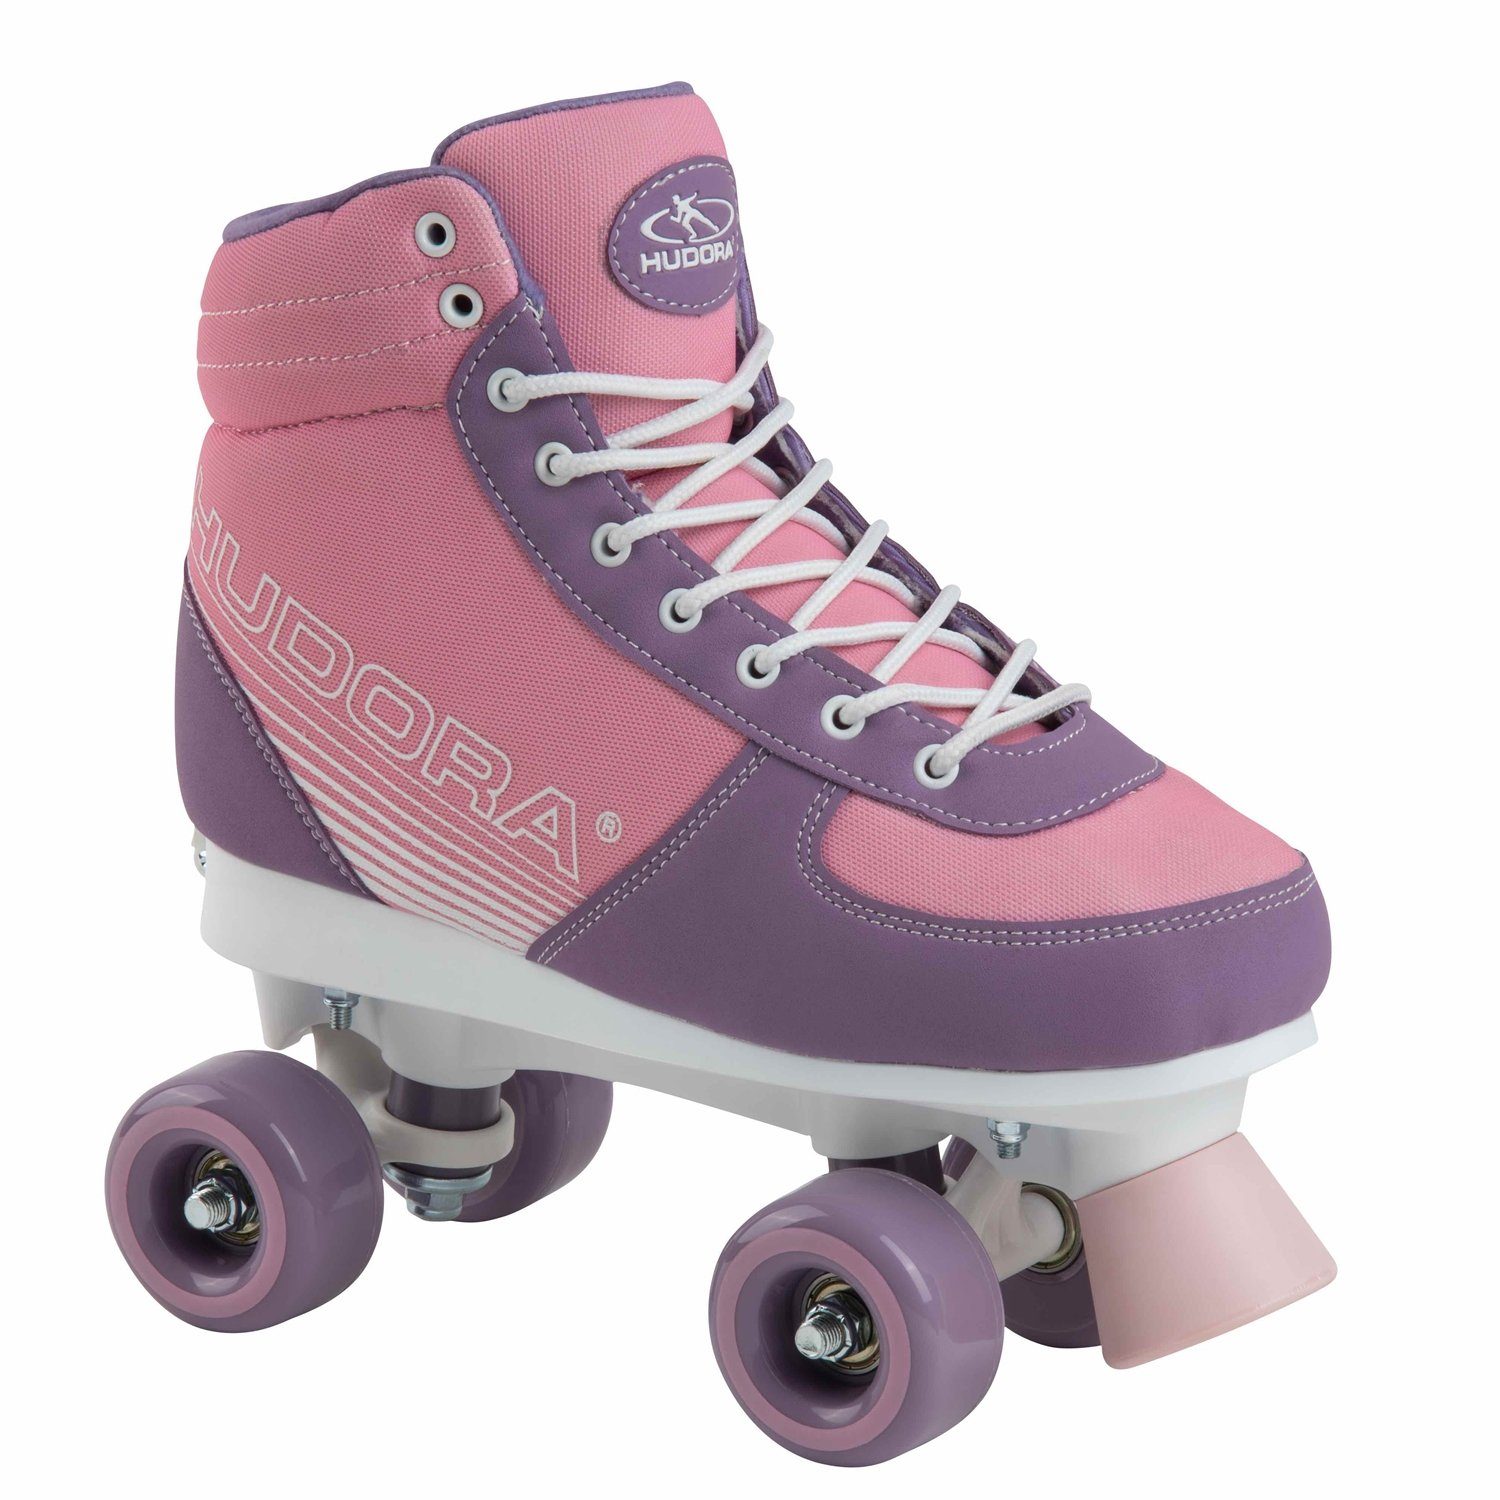 Hudora Scooter 13125 Roller Skates Advenced pink Blush Gr.31-34